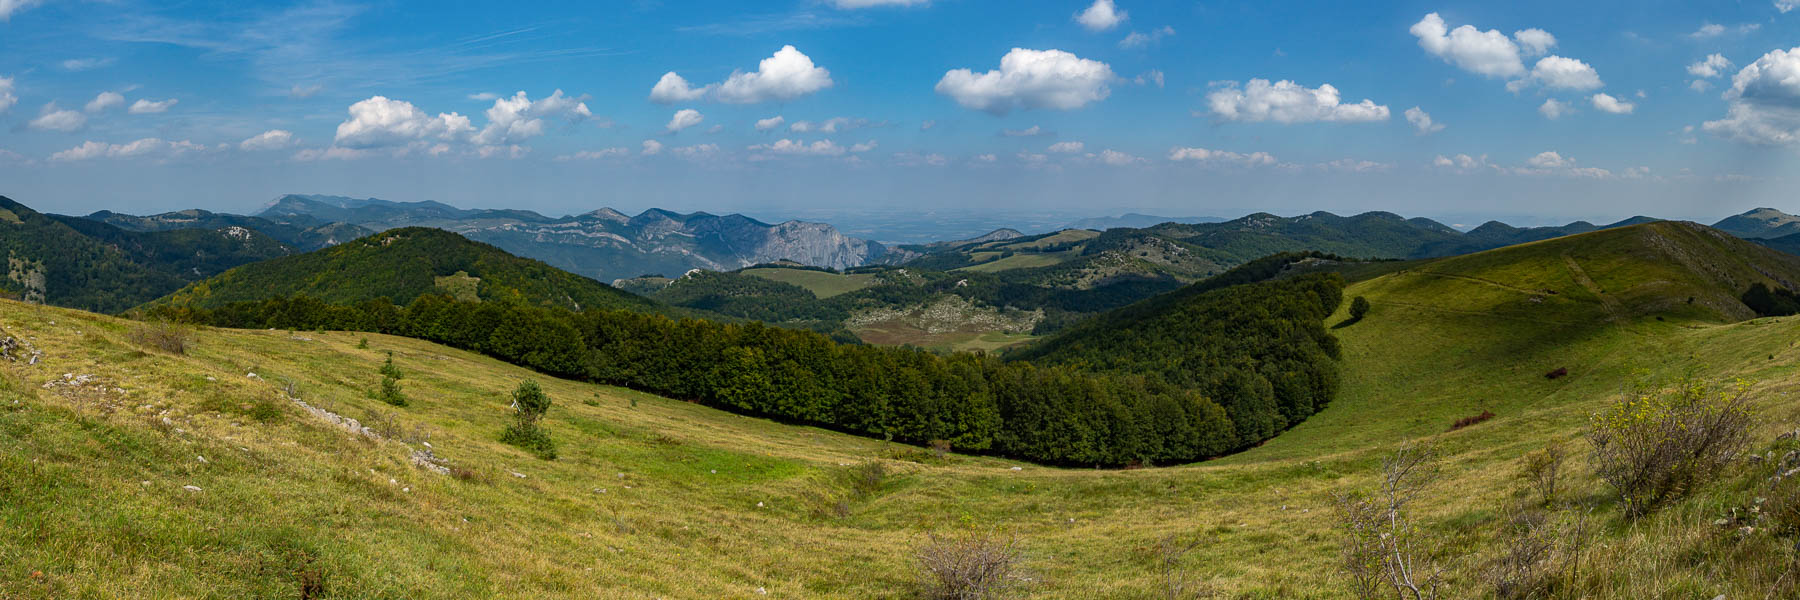 Massif de Vratsa : Buk, 1393 m, vue nord